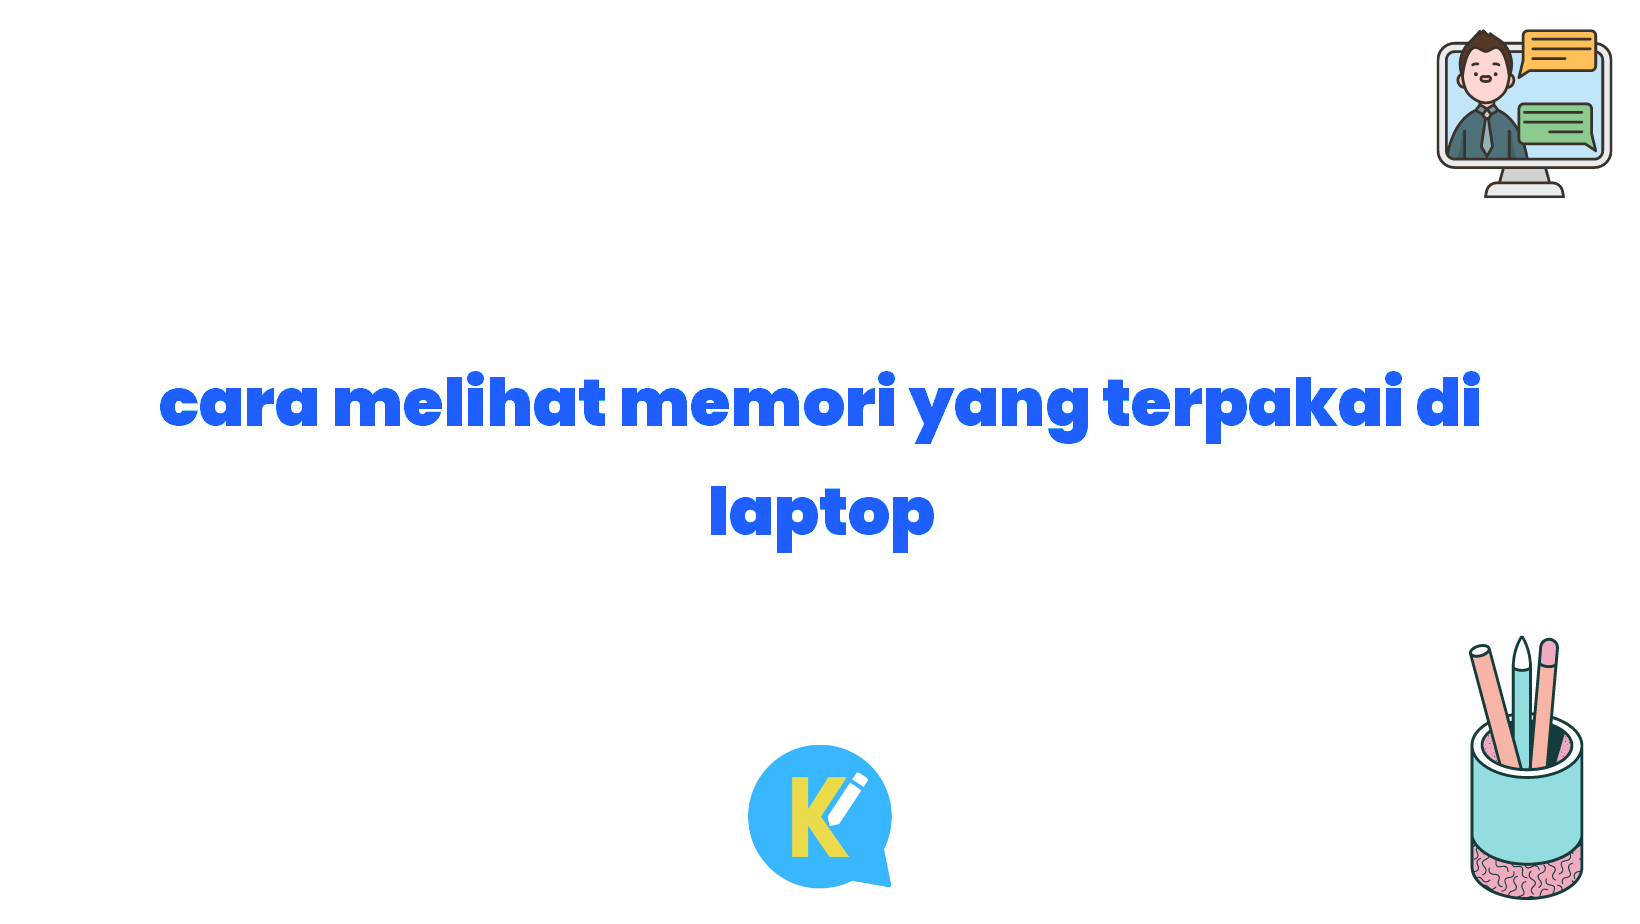 cara melihat memori yang terpakai di laptop